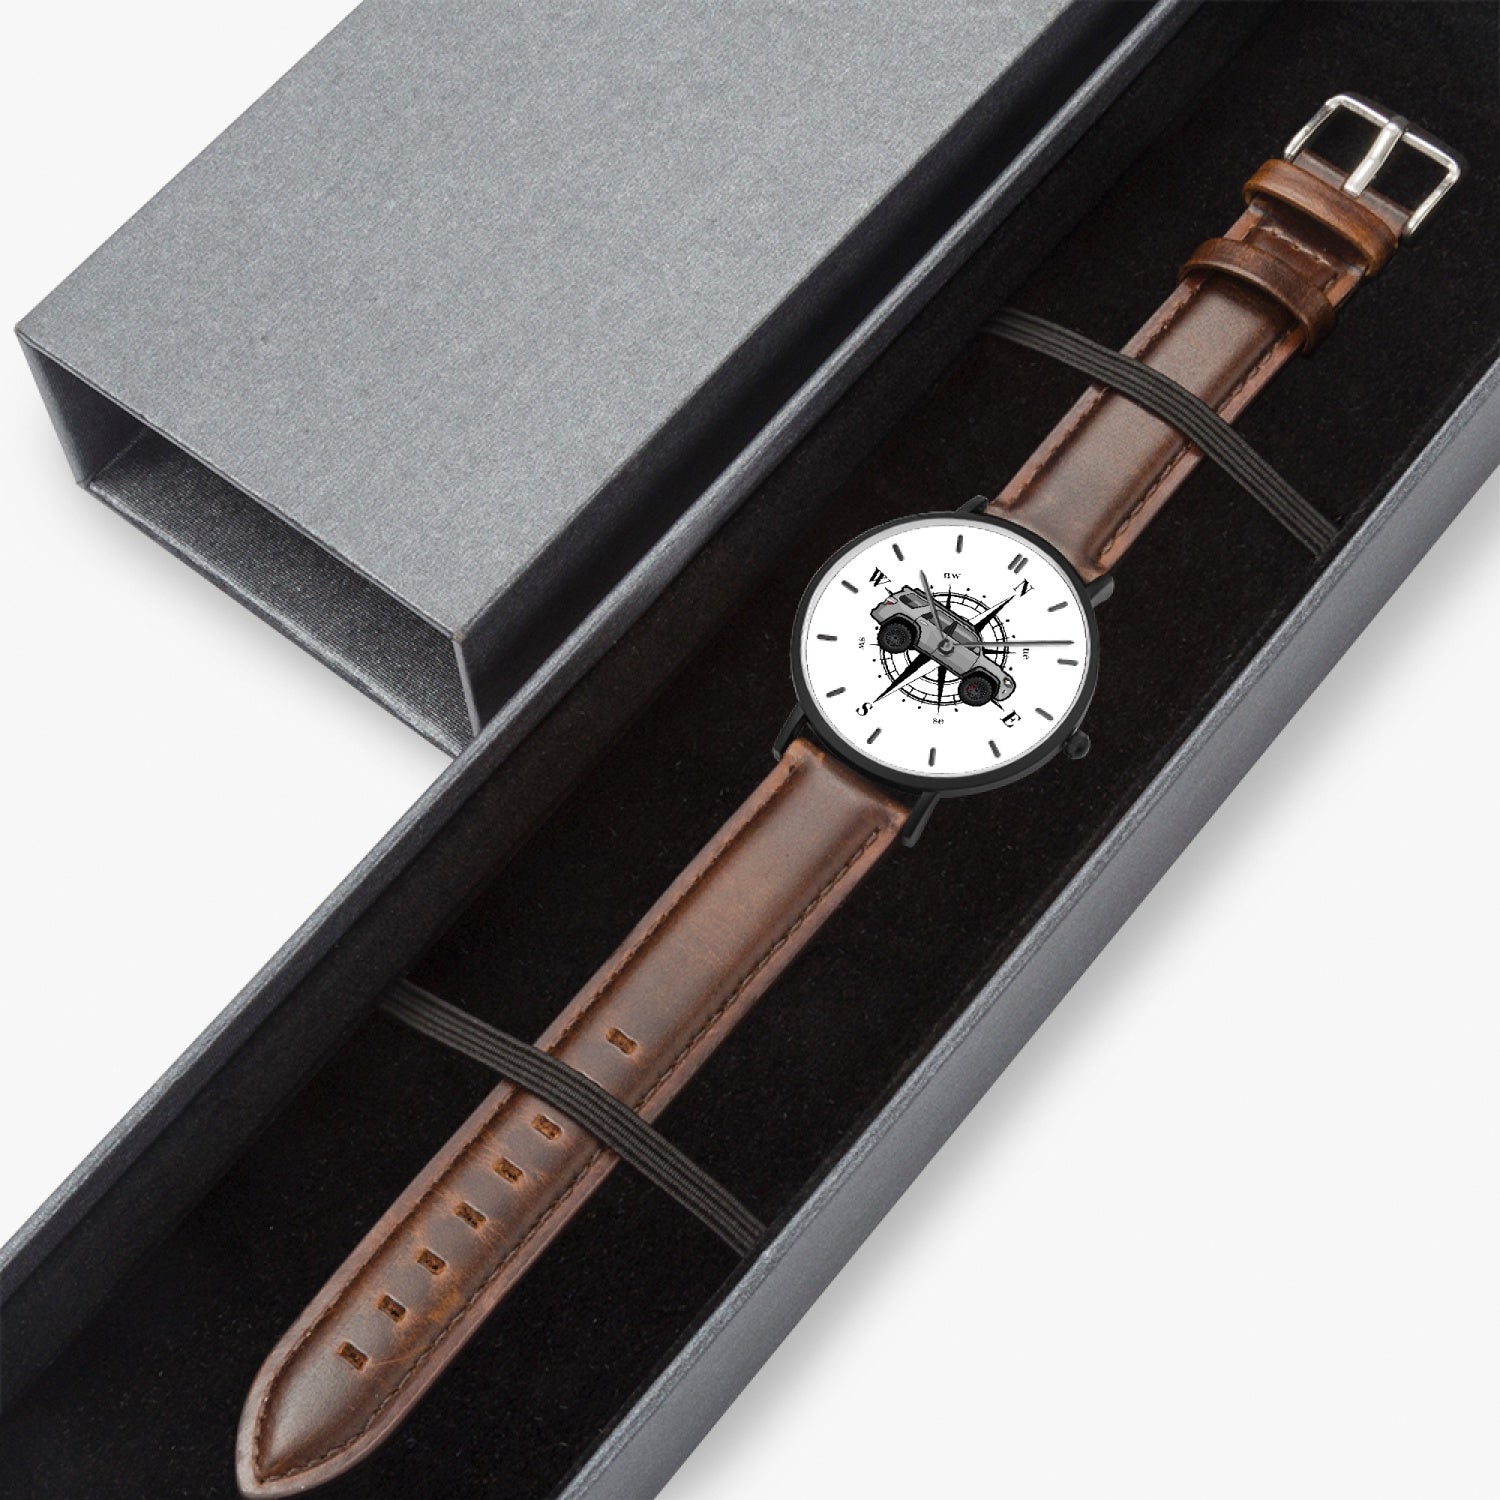 4runner gear leather strap quartz watch, 4Runner Gear